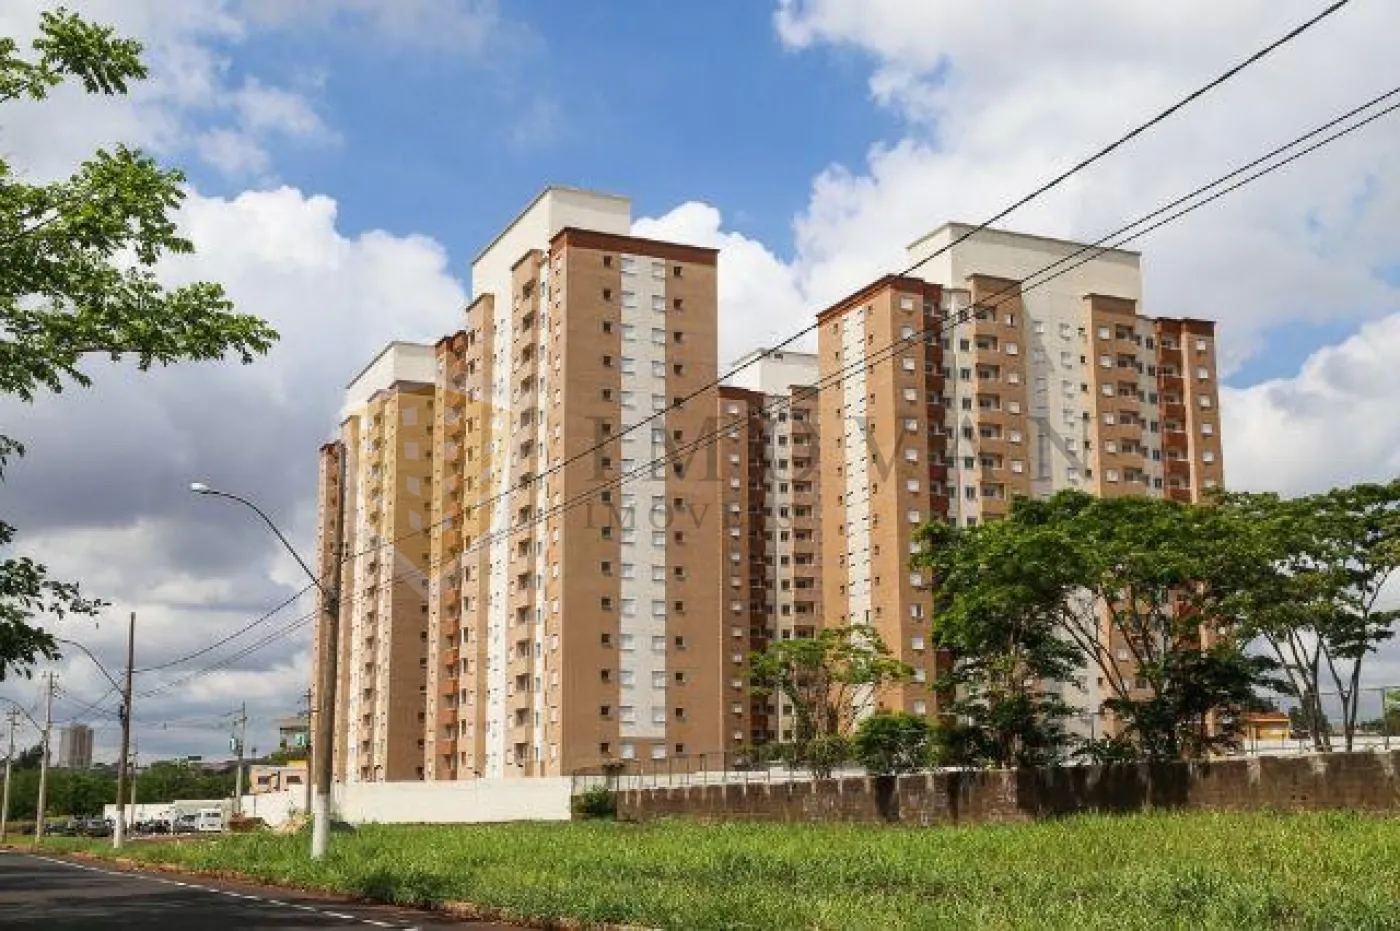 Comprar Apartamento / Padrão em Ribeirão Preto R$ 190.000,00 - Foto 2